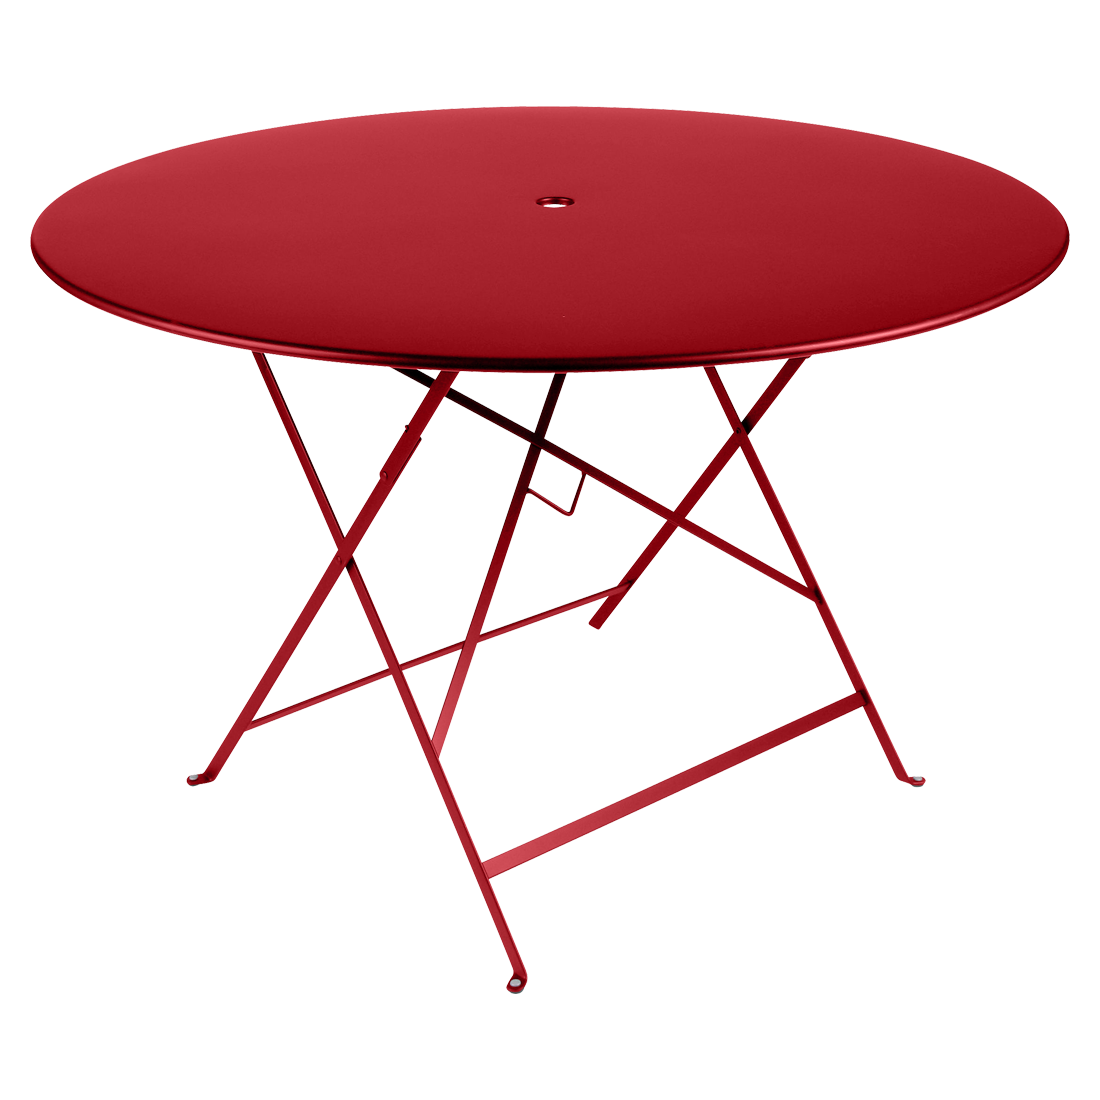 Makově červený kovový skládací stůl Fermob Bistro Ø 117 cm Fermob